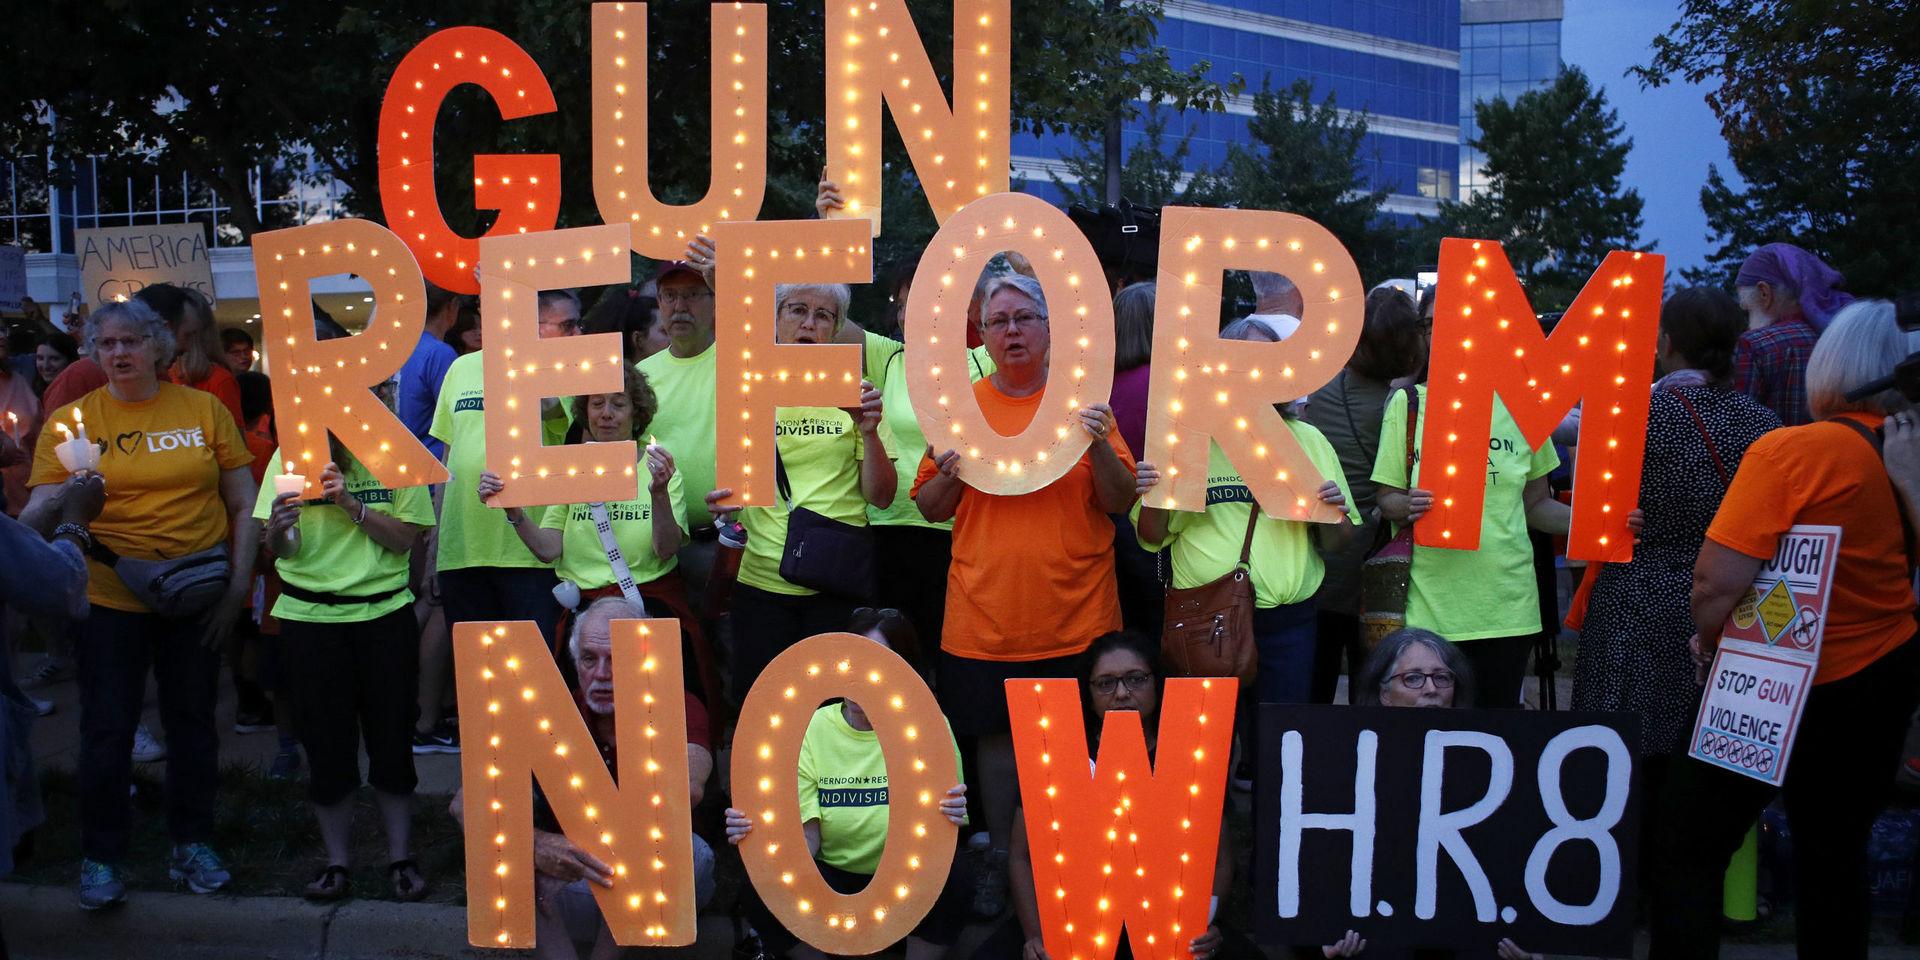 En manifestation för skärpta vapenlagar utanför vapenlobbyorganisationen NRA:s högkvarter i Fairfax i Virginia.